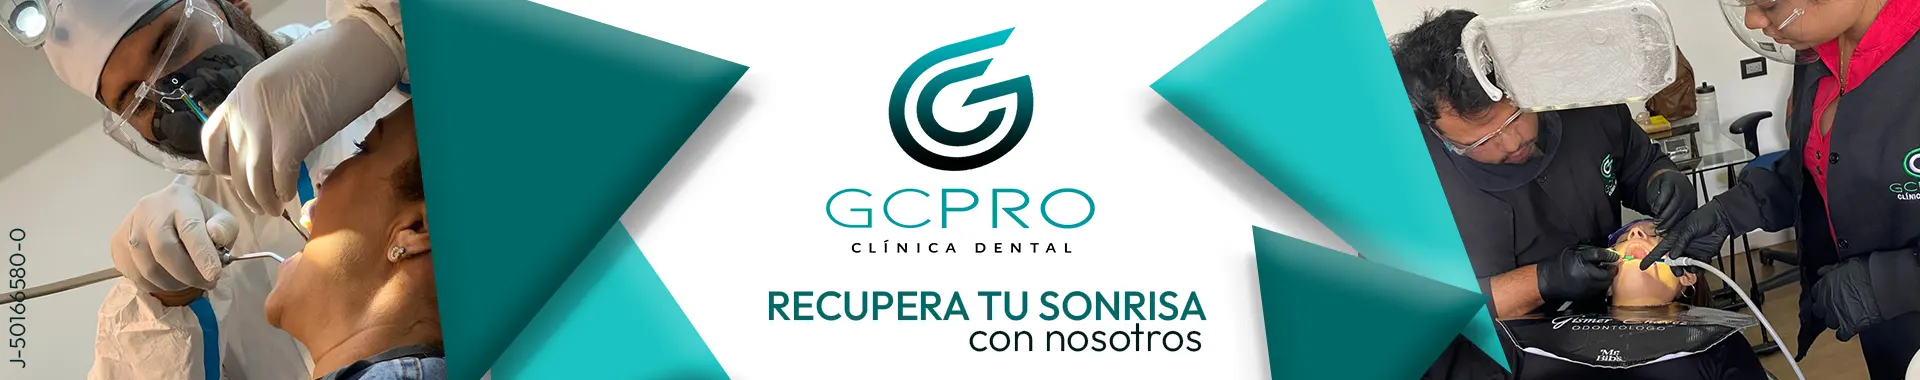 Imagen 1 del perfil de GCPRO Dent & Medic